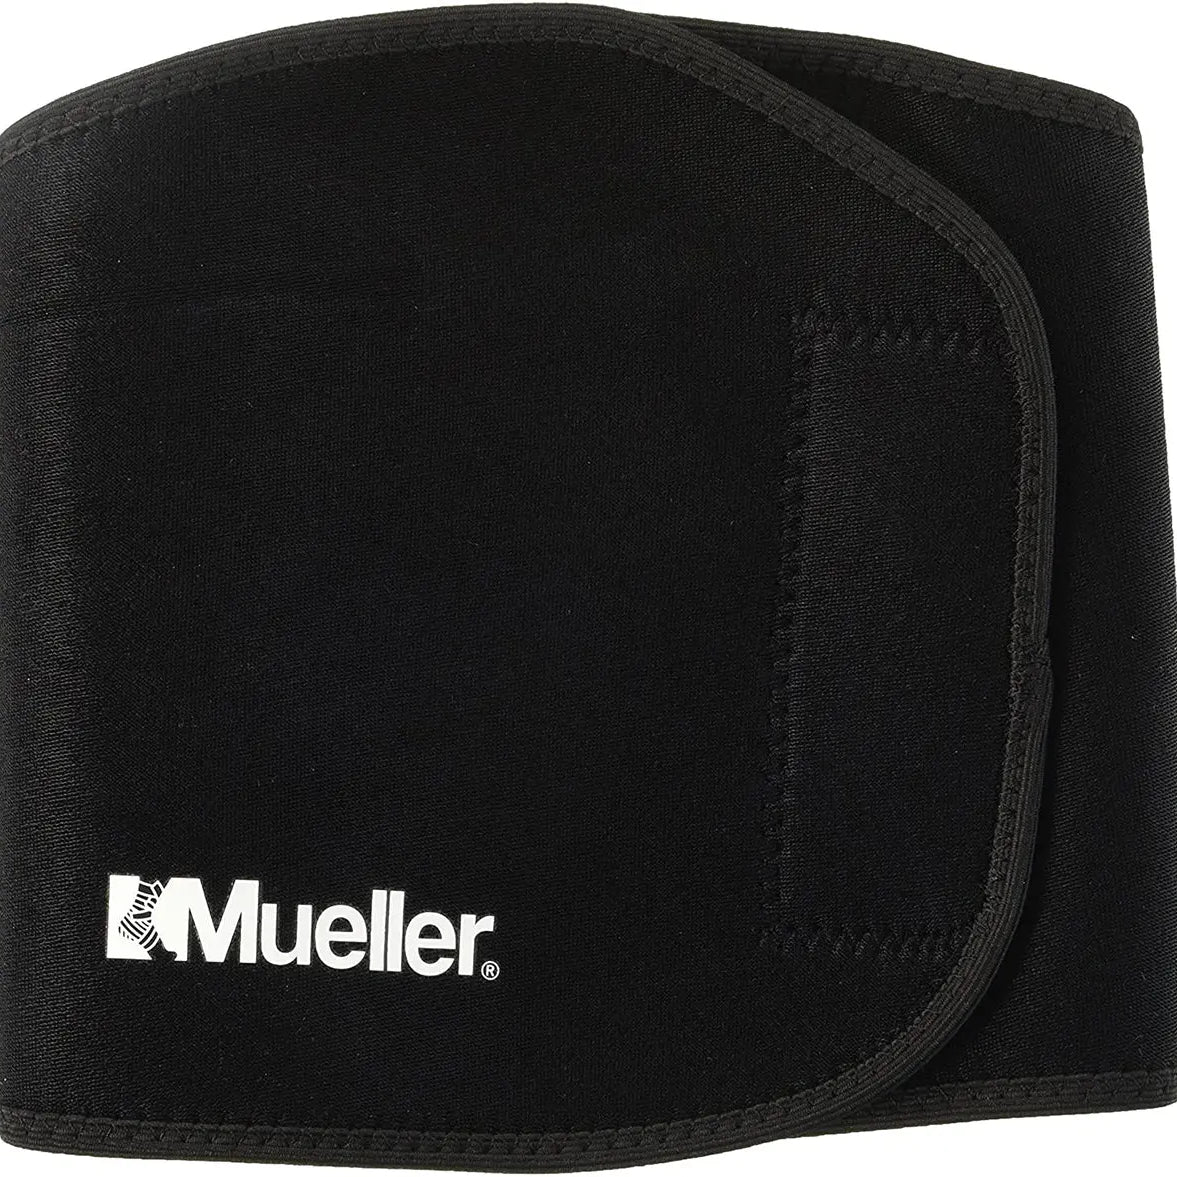 Mueller Adjustable Thigh Support - Black Mueller Sports Medicine